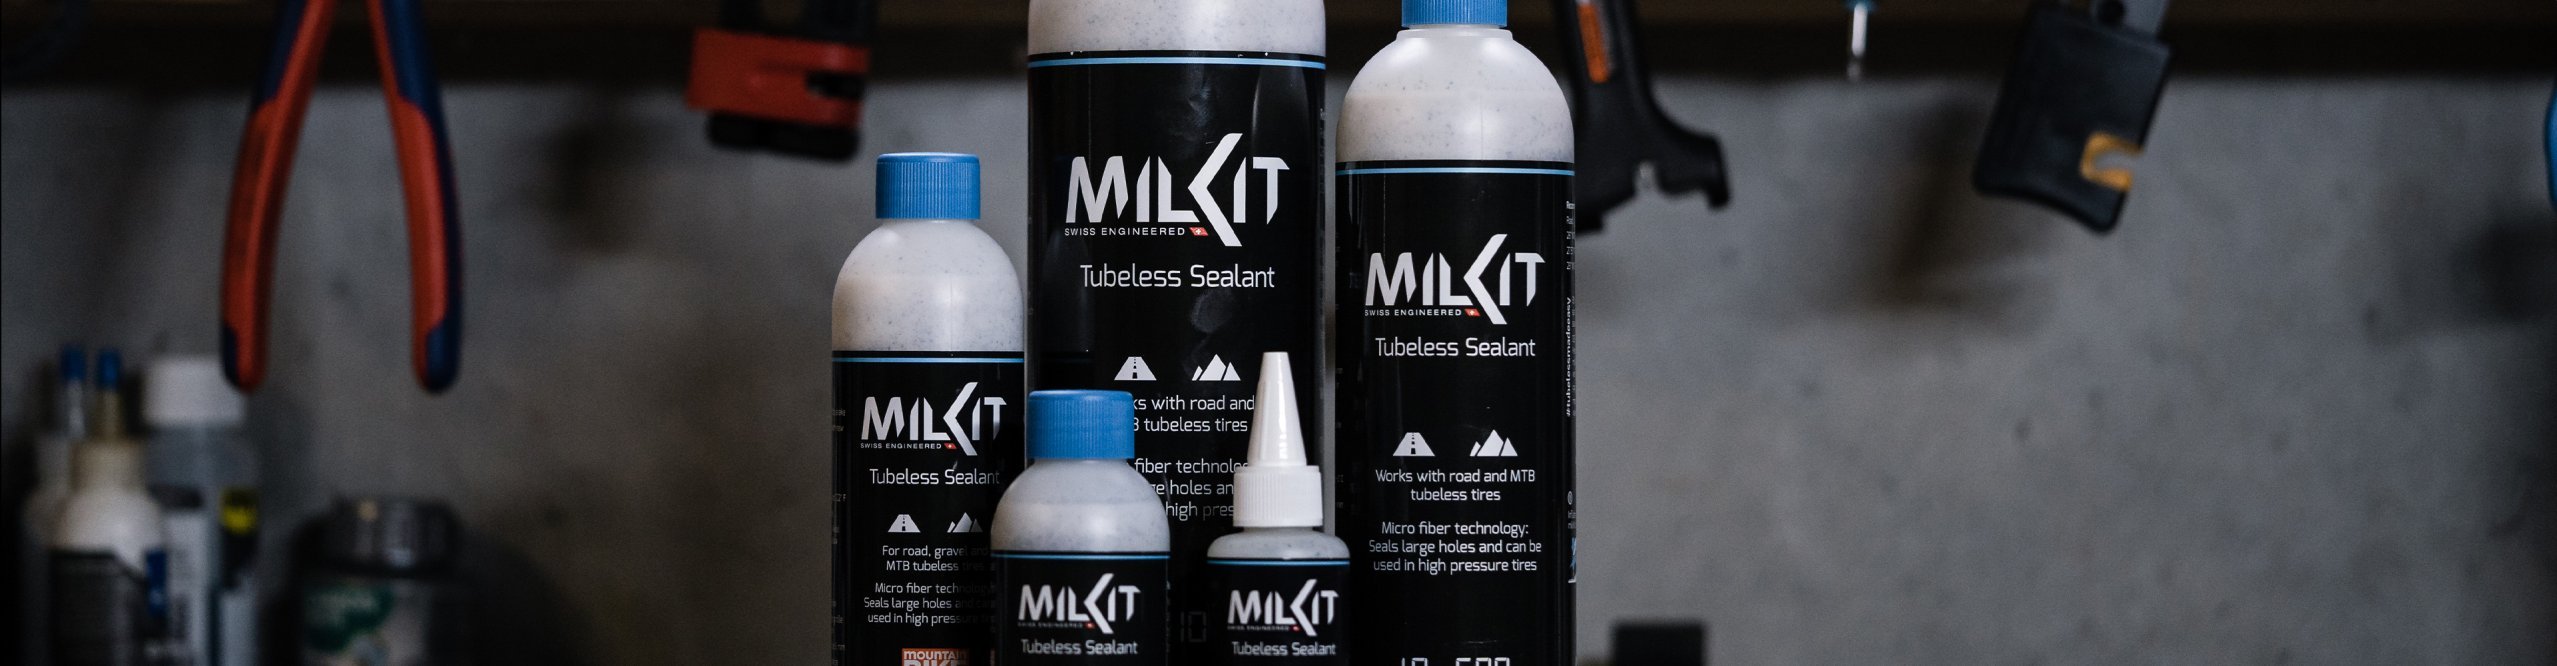 milKit-Flaschen-auf-Werkbank-Header_Desktop_3840x1000_milkit_jcadosch-0003.jpg